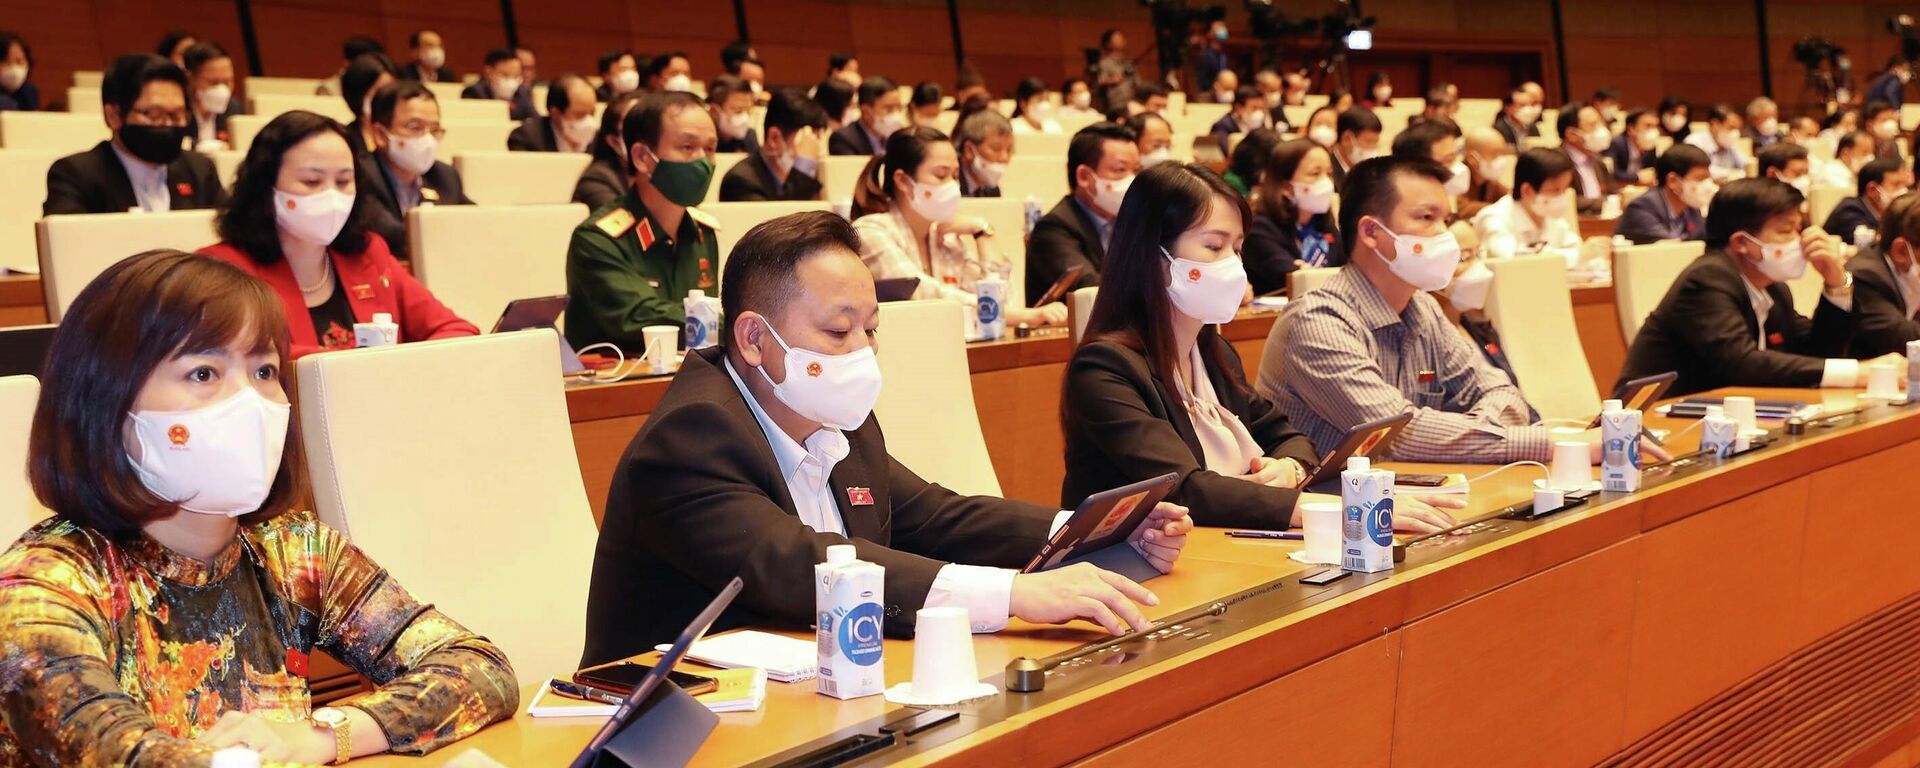 Các đại biểu Quốc hội biểu quyết thông qua Nghị quyết về Kế hoạch cơ cấu lại nền kinh tế giai đoạn 2021-2025 - Sputnik Việt Nam, 1920, 12.11.2021